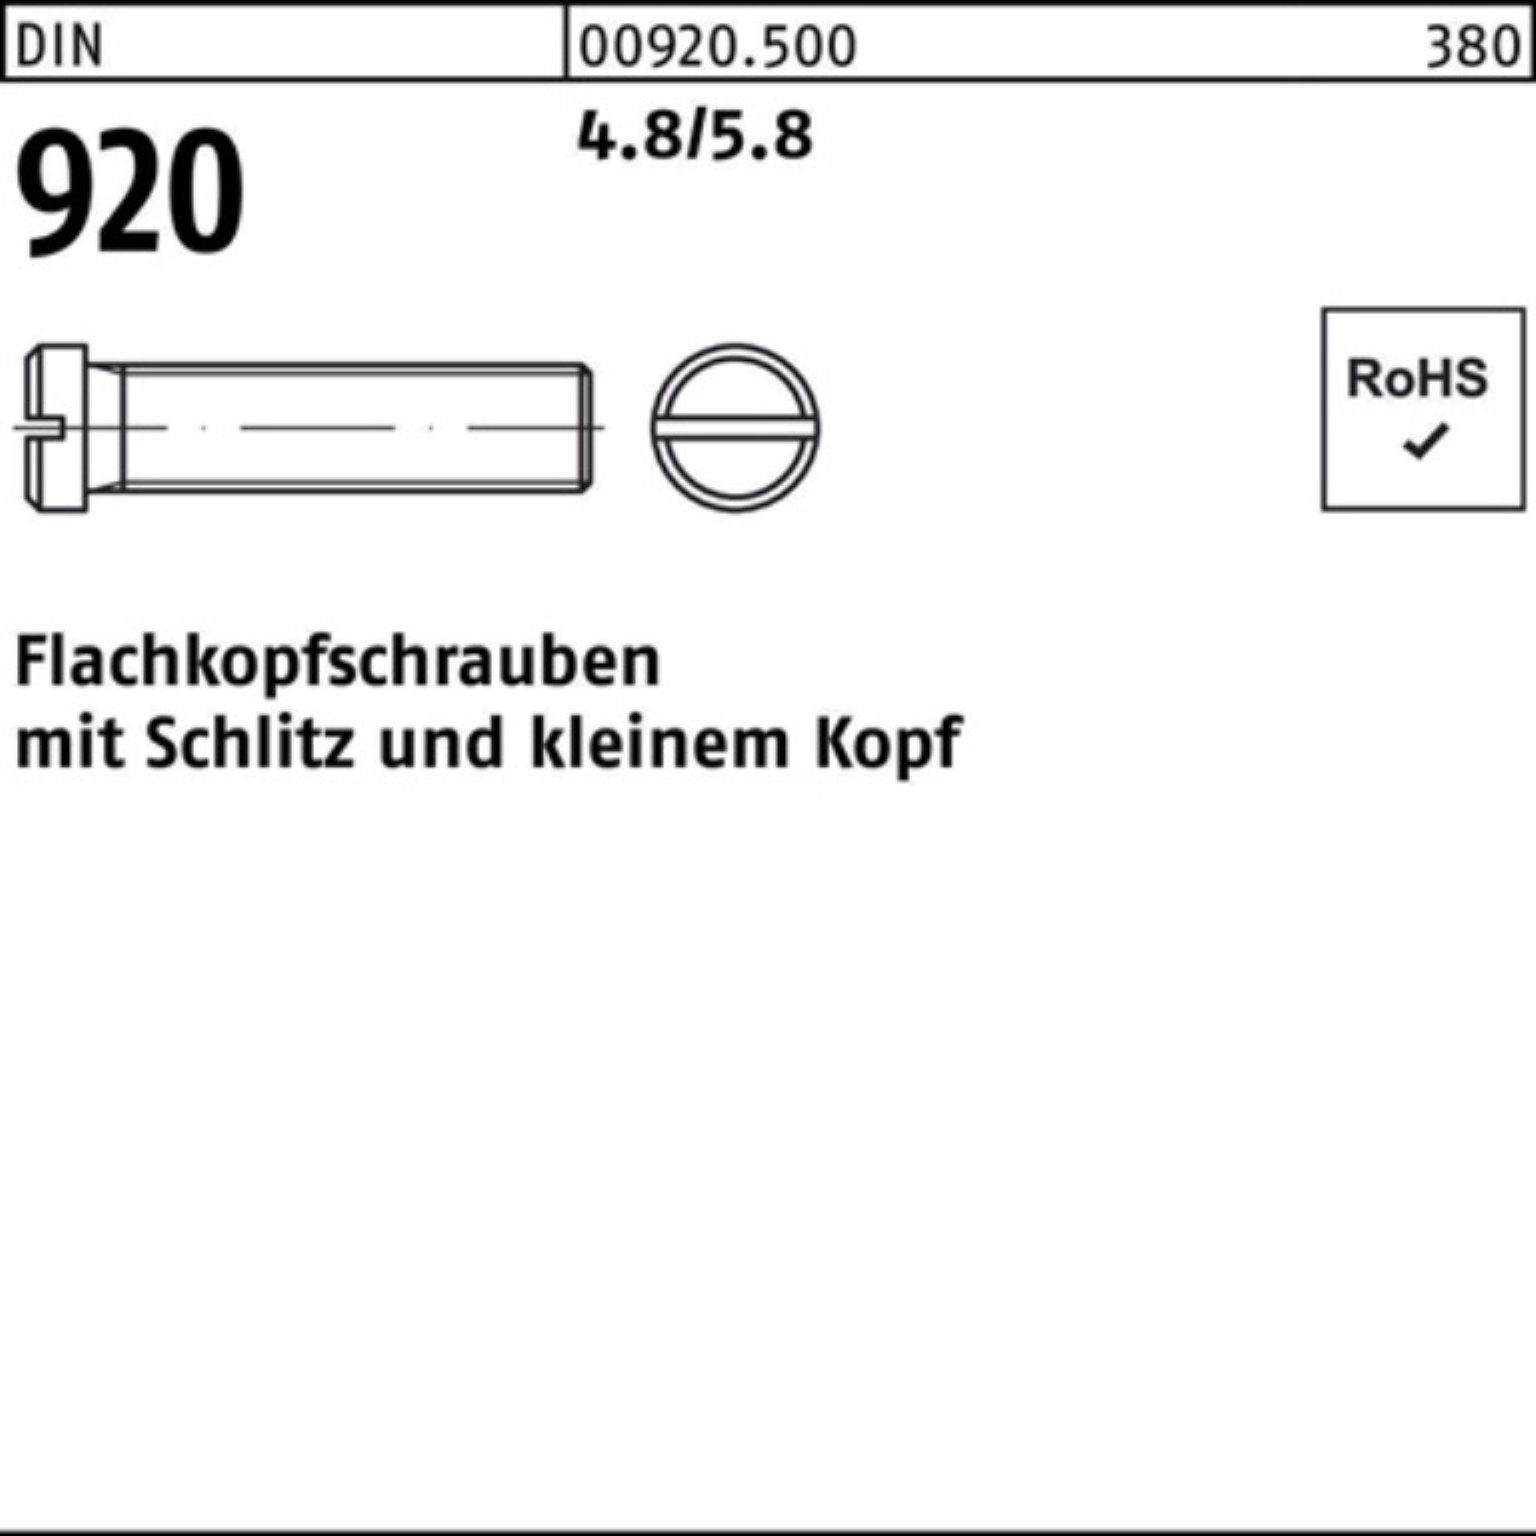 Reyher Schraube 100er Pack Flachkopfschraube DIN 920 Schlitz M4x 12 4.8/5.8 100 Stück